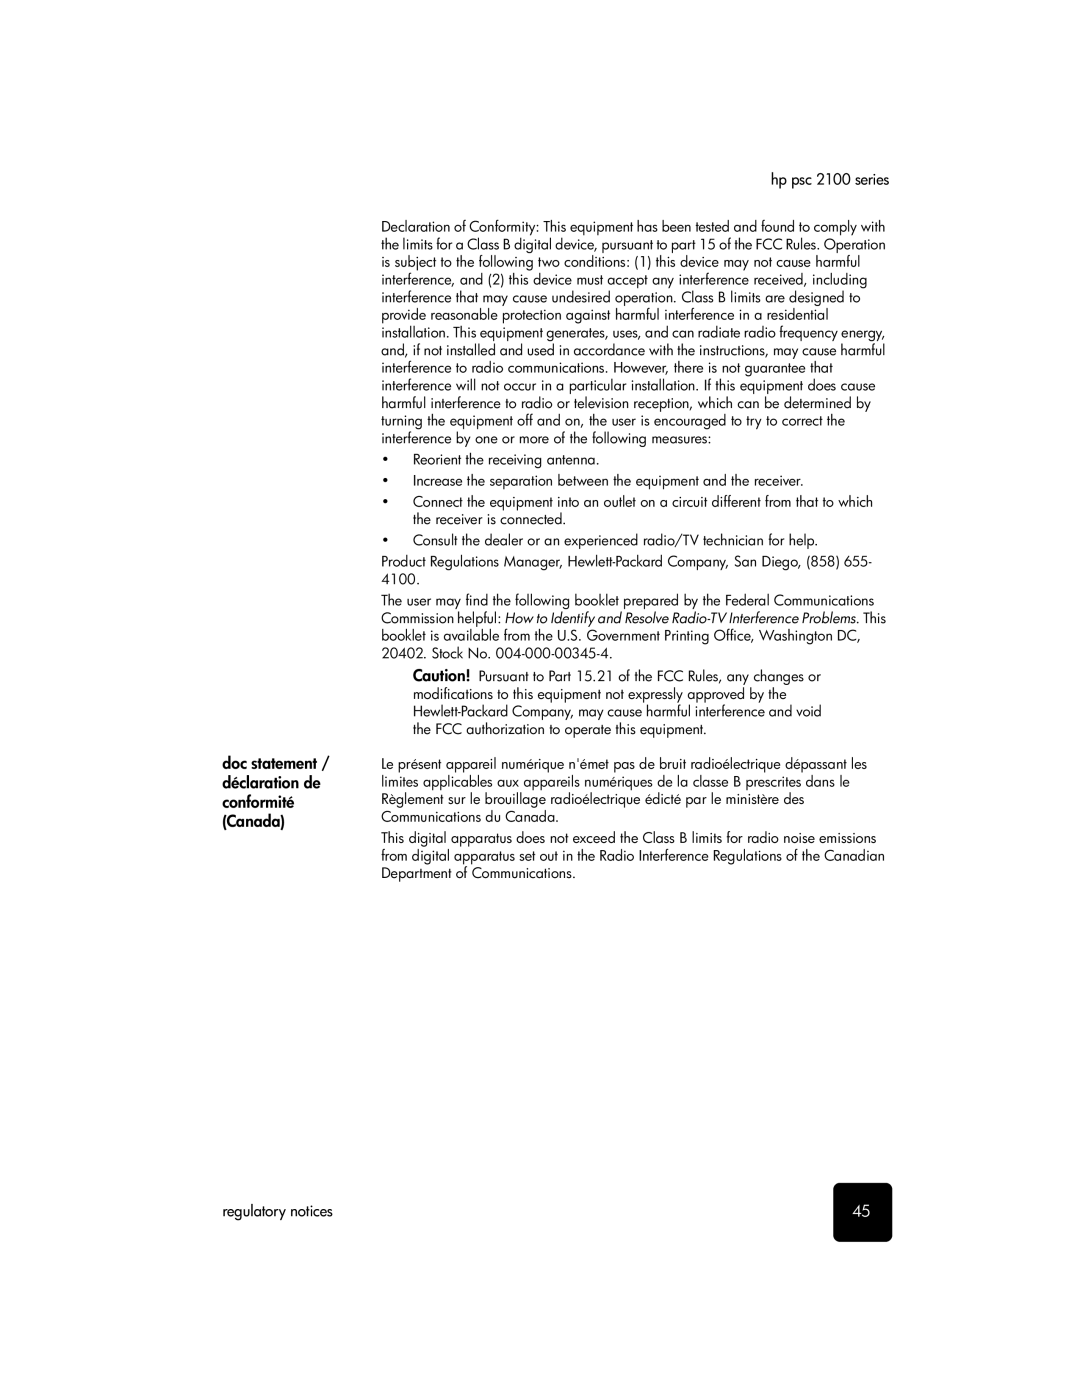 HP 2100 manual Doc statement / déclaration de conformité Canada 